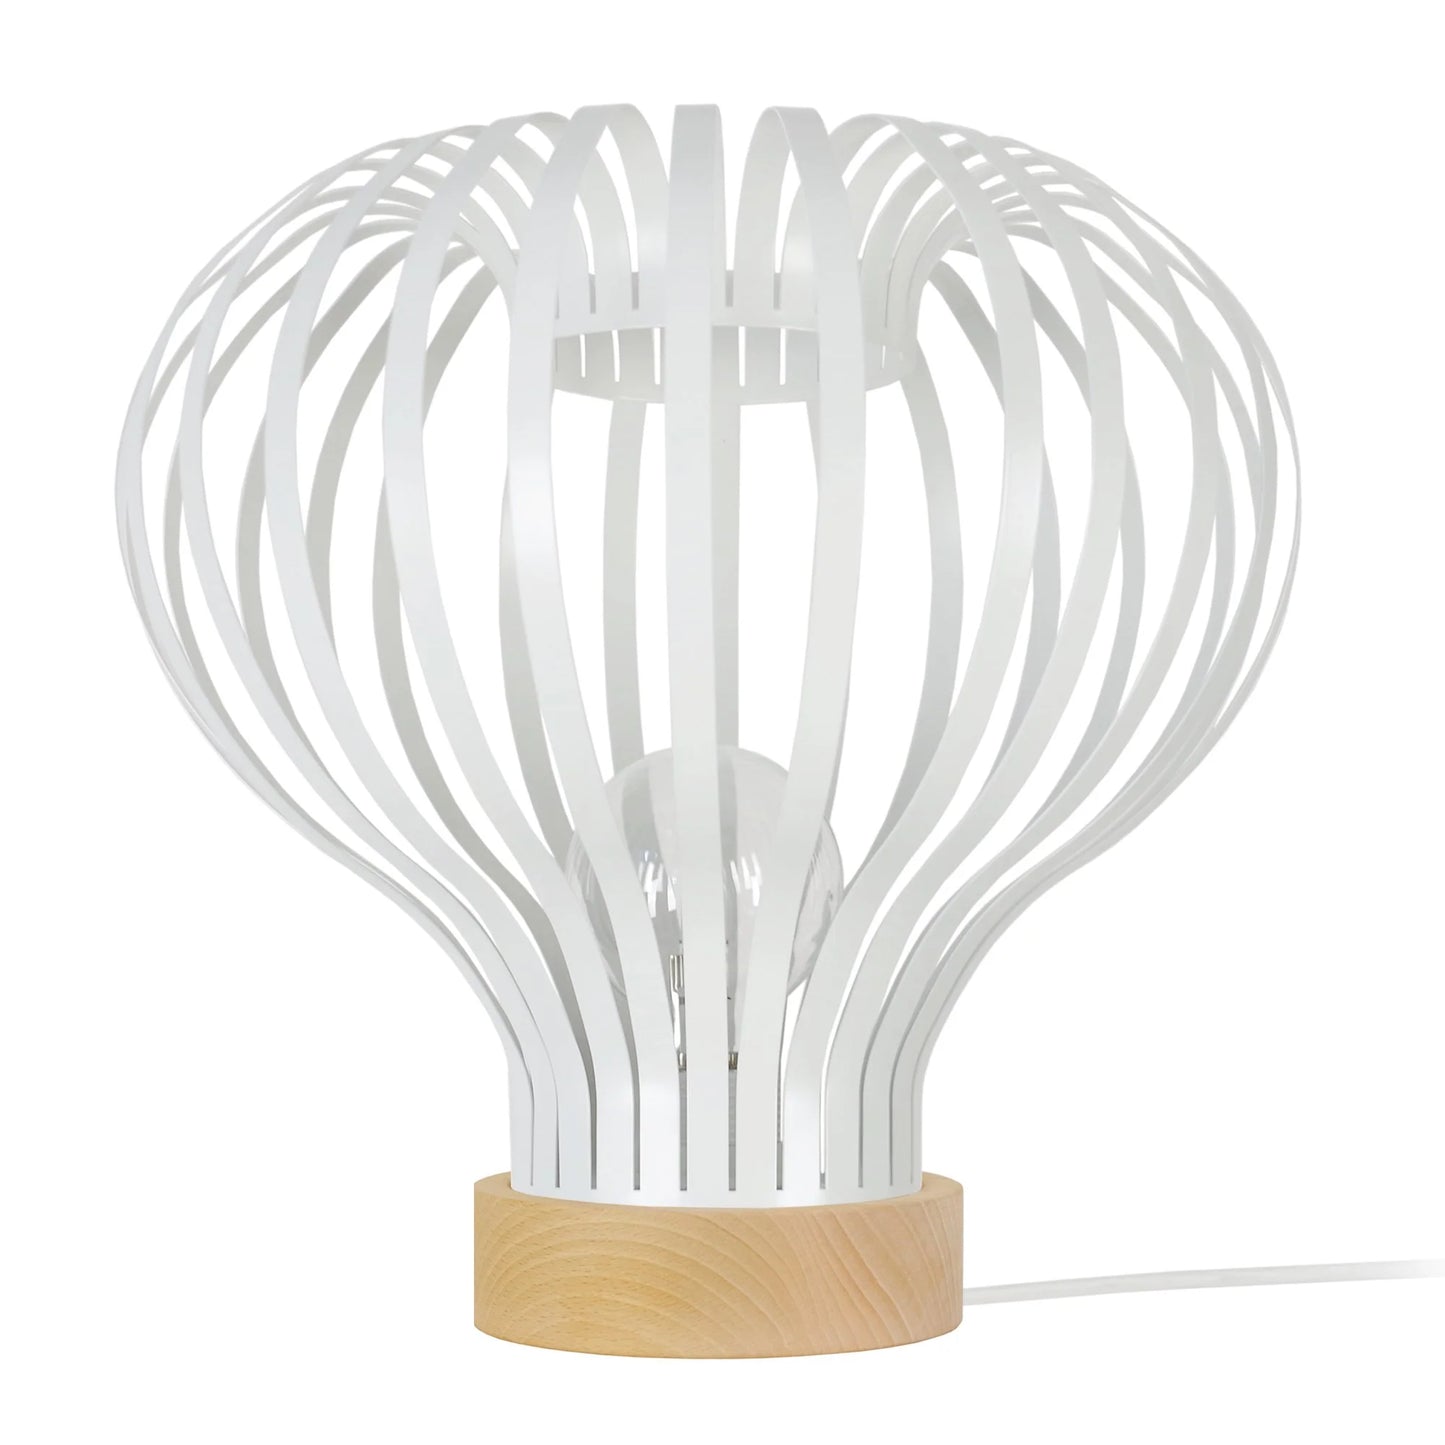 Une Lampe Design au style Vintage blanche issu de l'artisanat portugais.